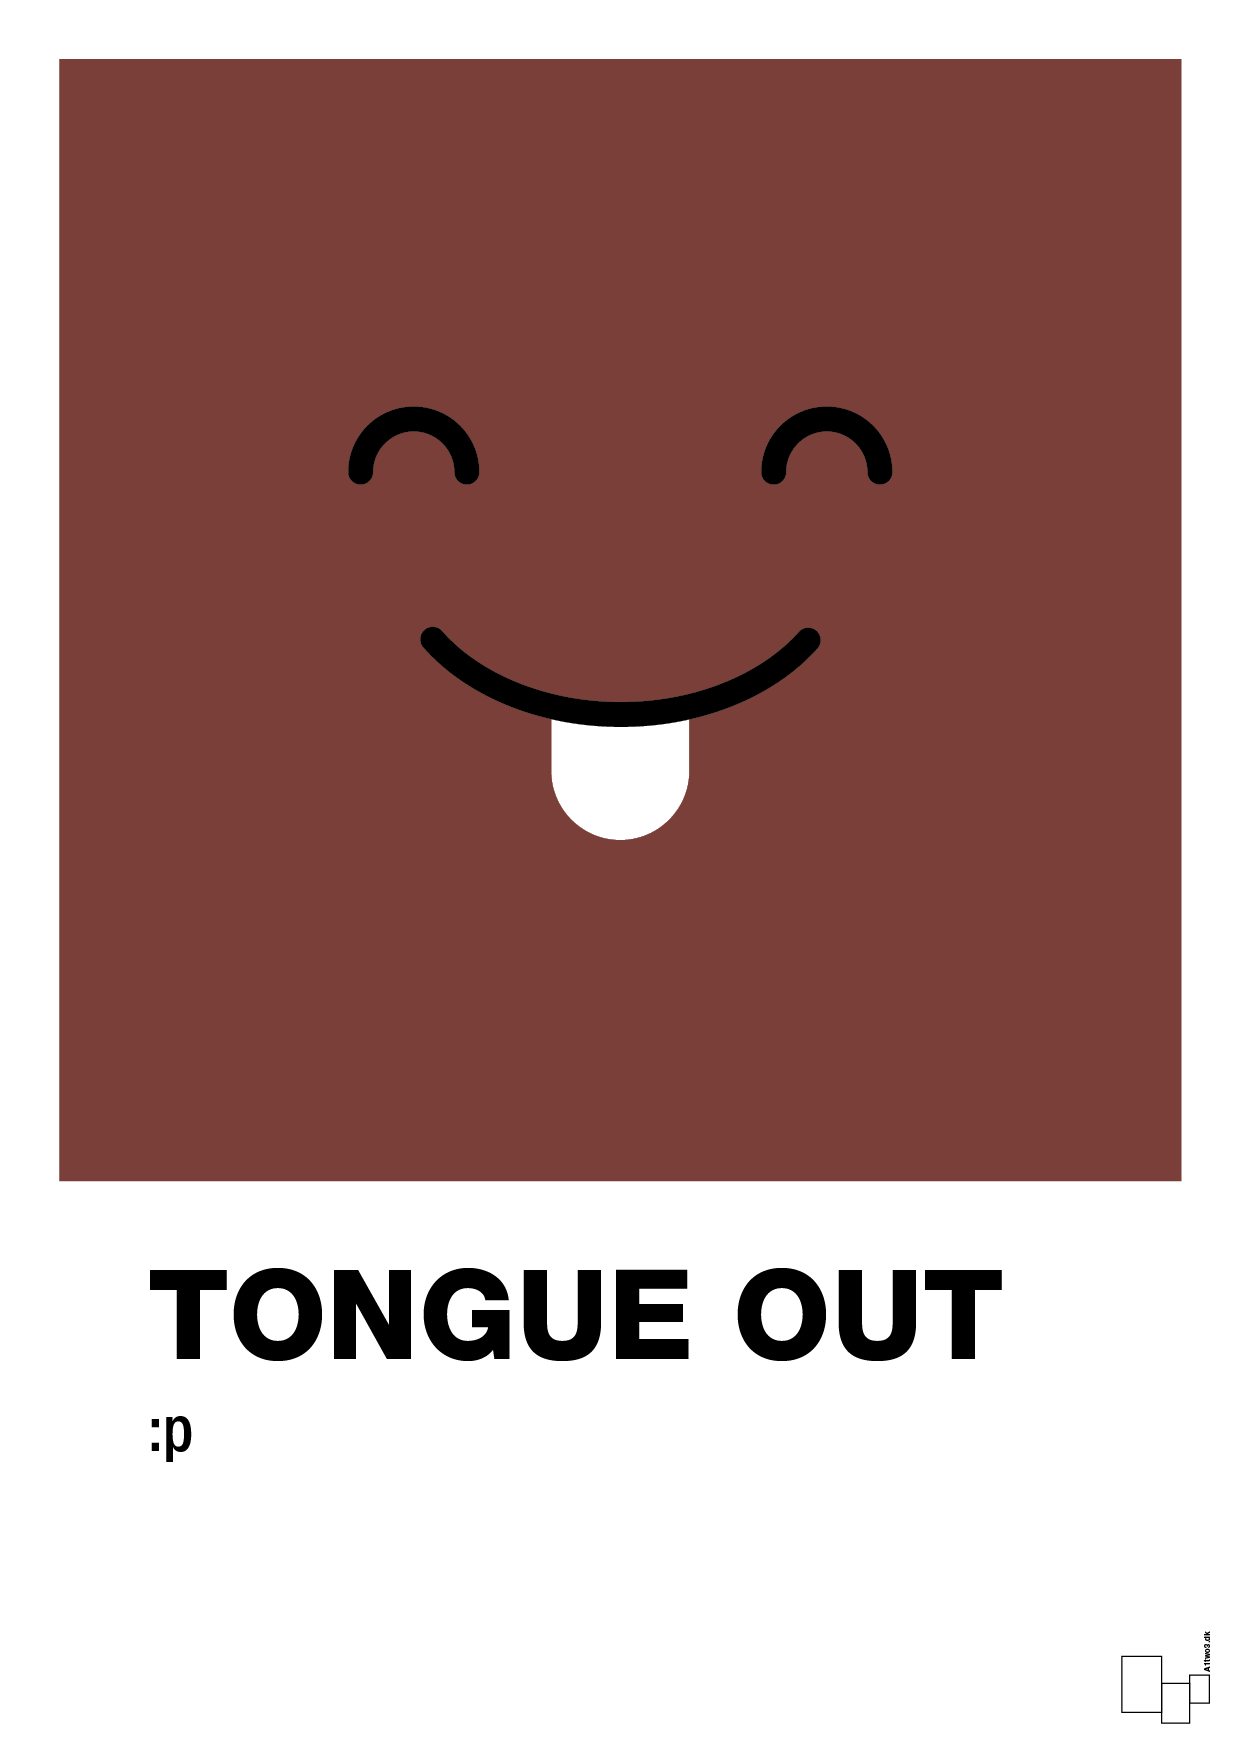 tongue out smiley - Plakat med Grafik i Red Pepper